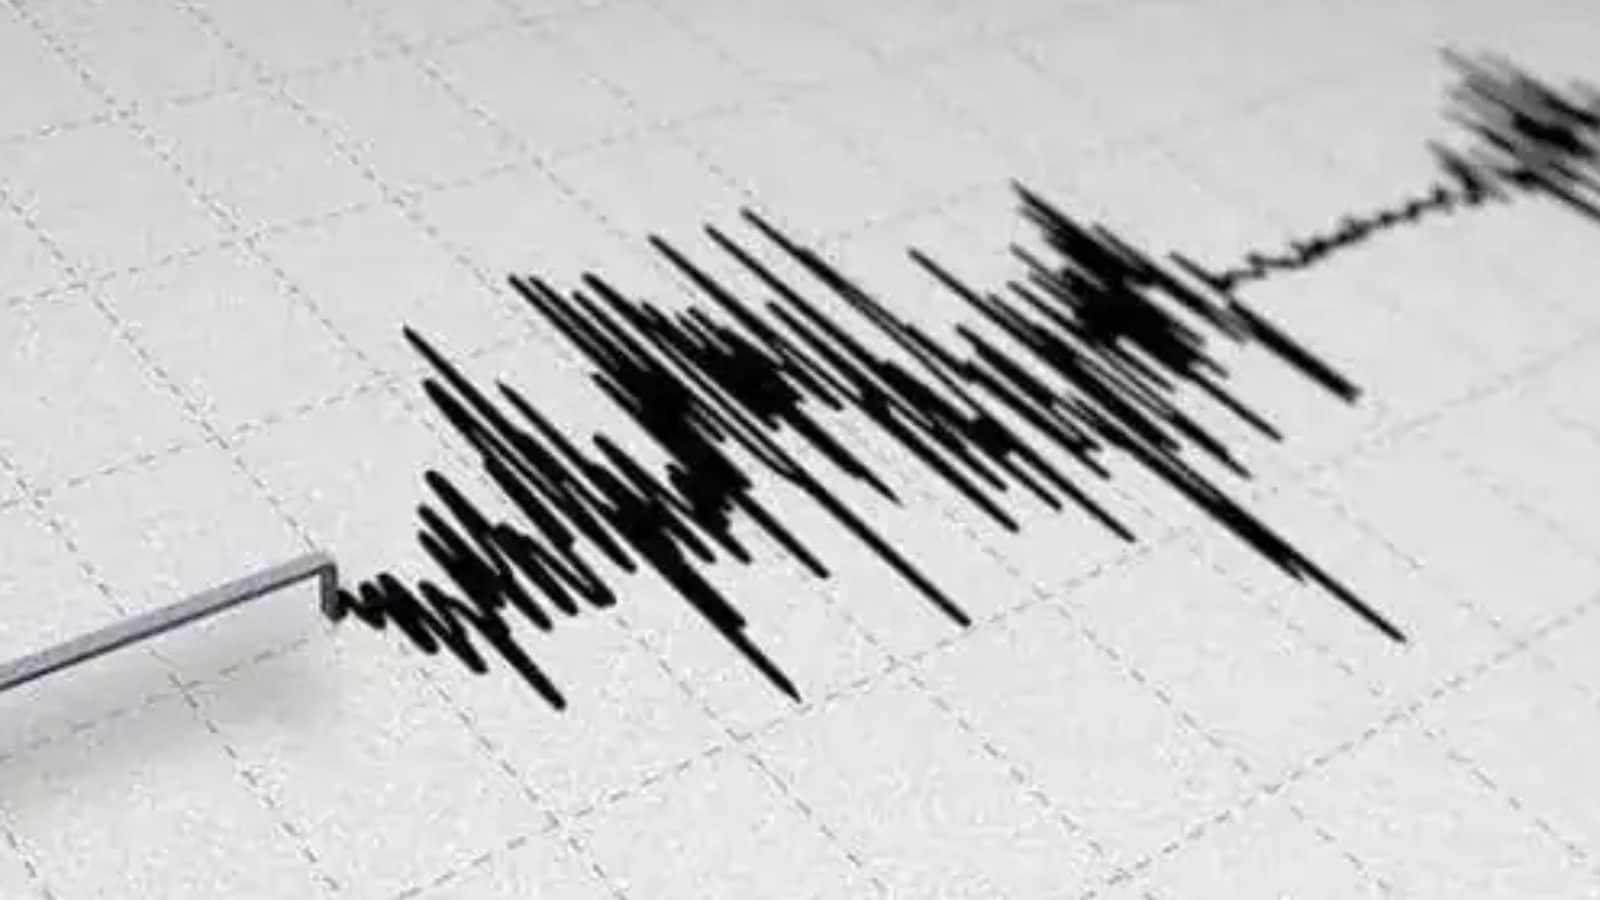 Gempa kuat melanda Selandia Baru – peringatan bagi orang-orang